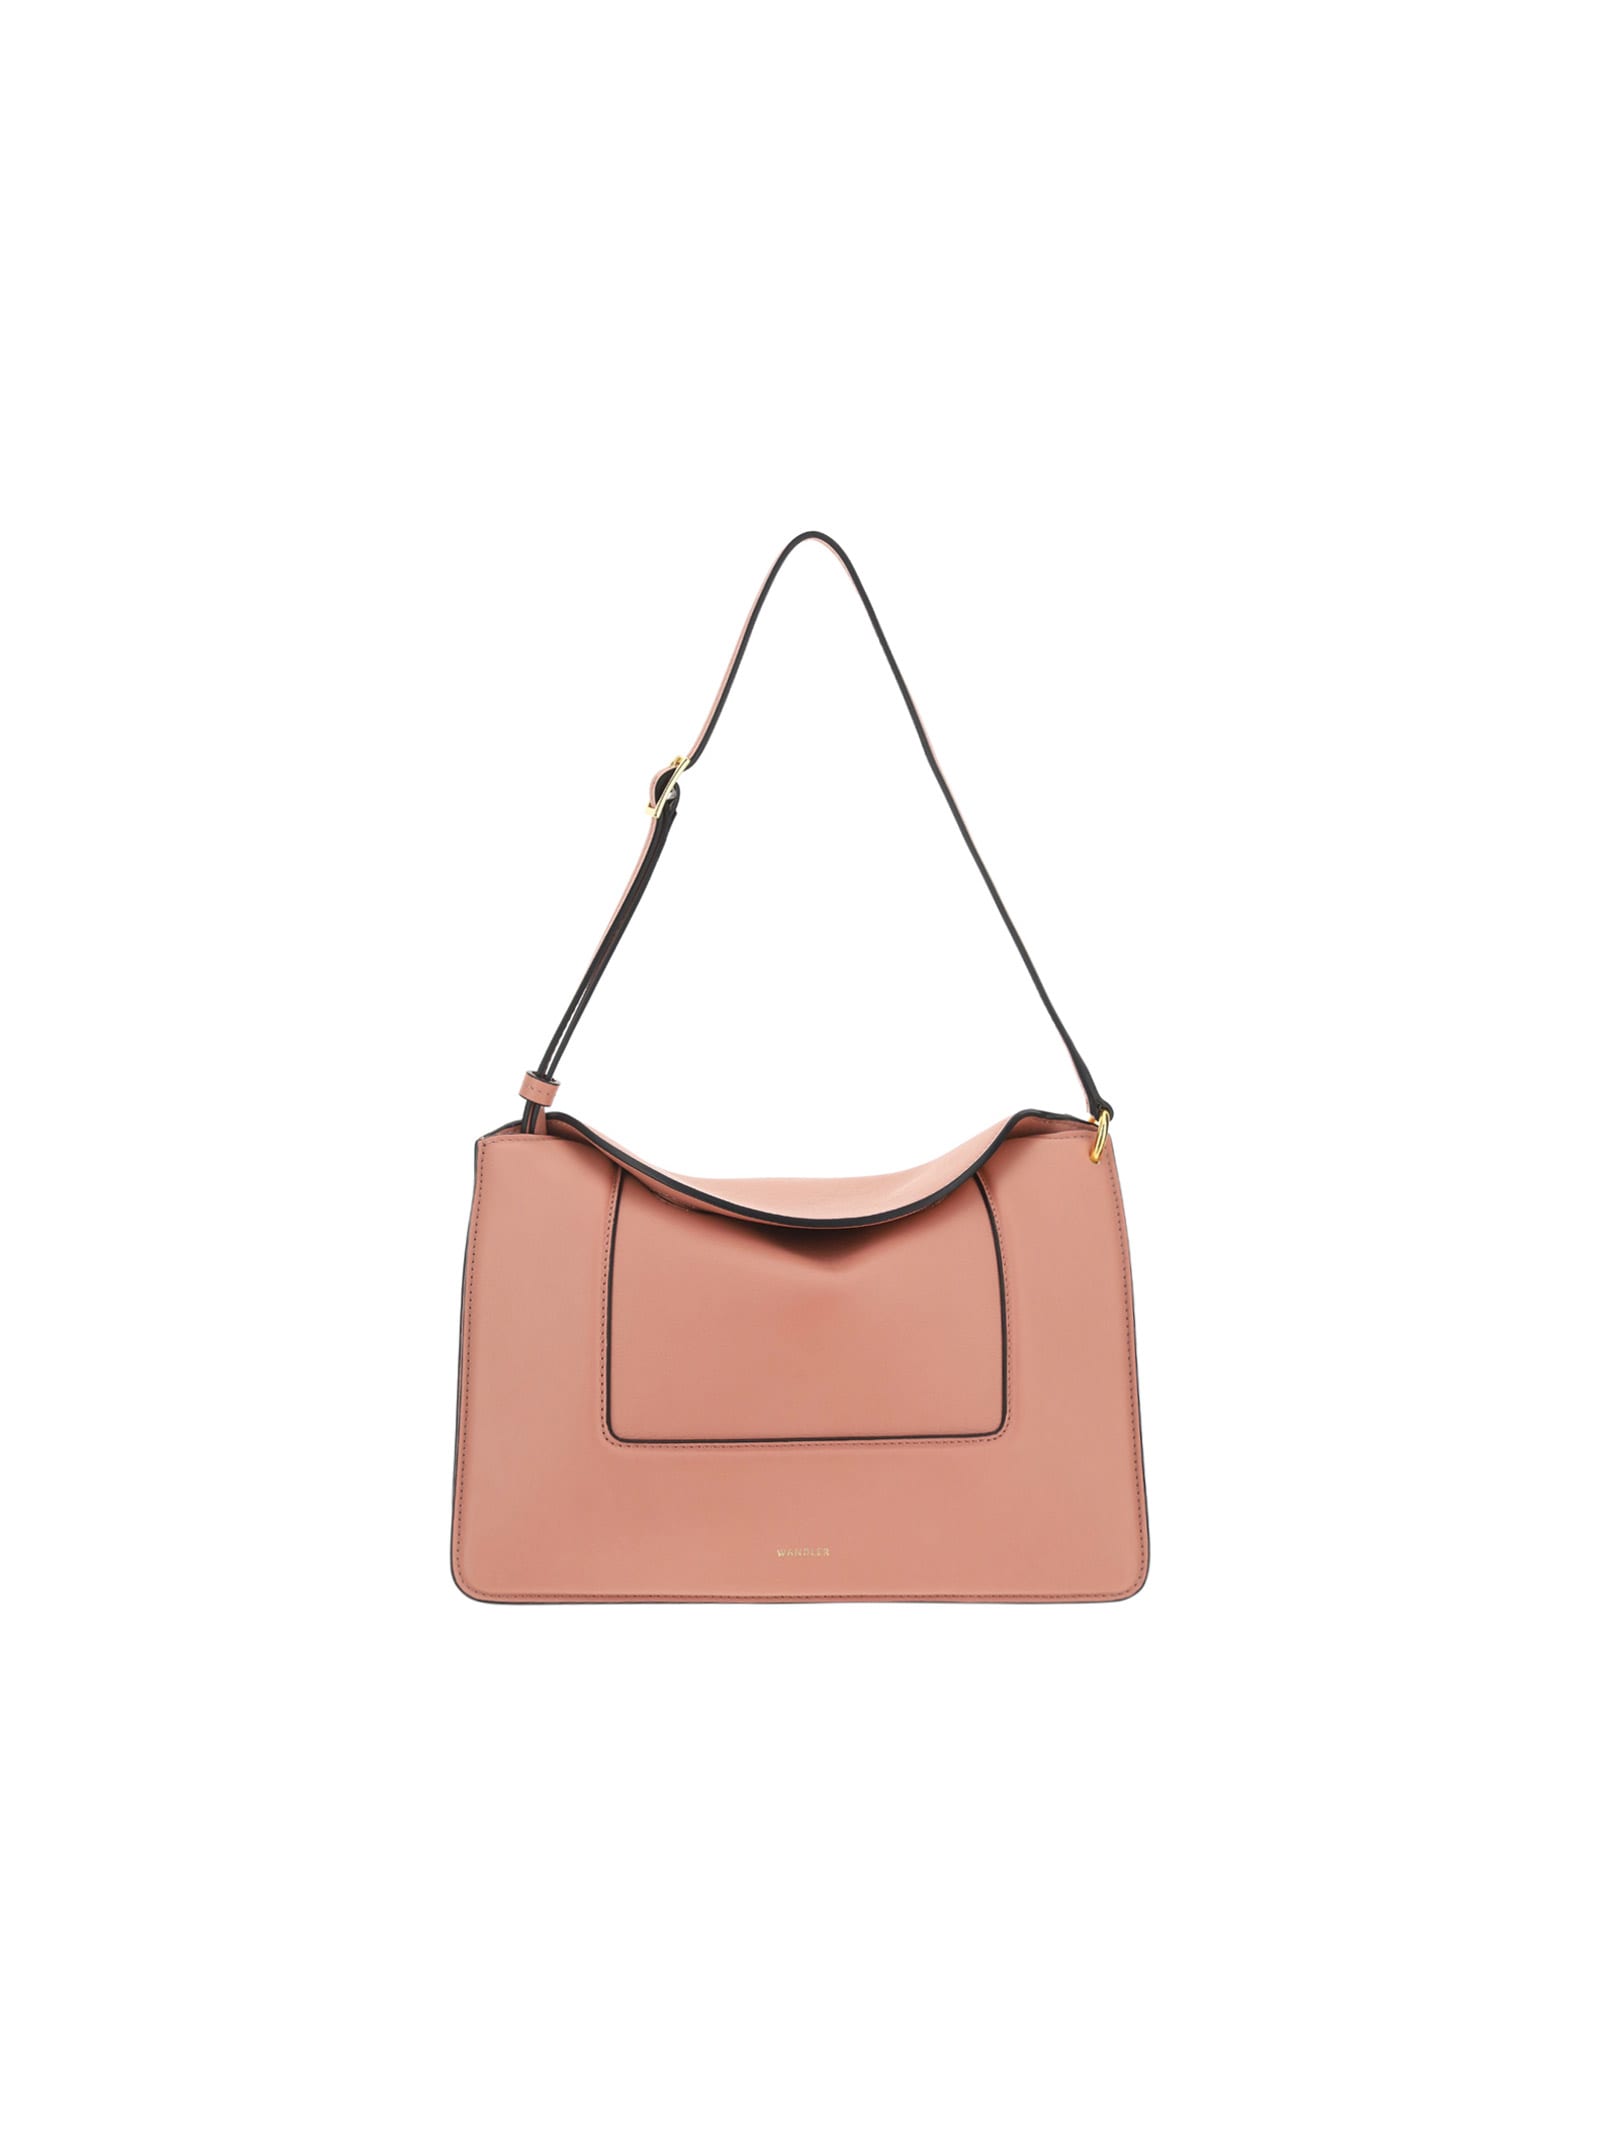 WANDLER Bags for Women | ModeSens